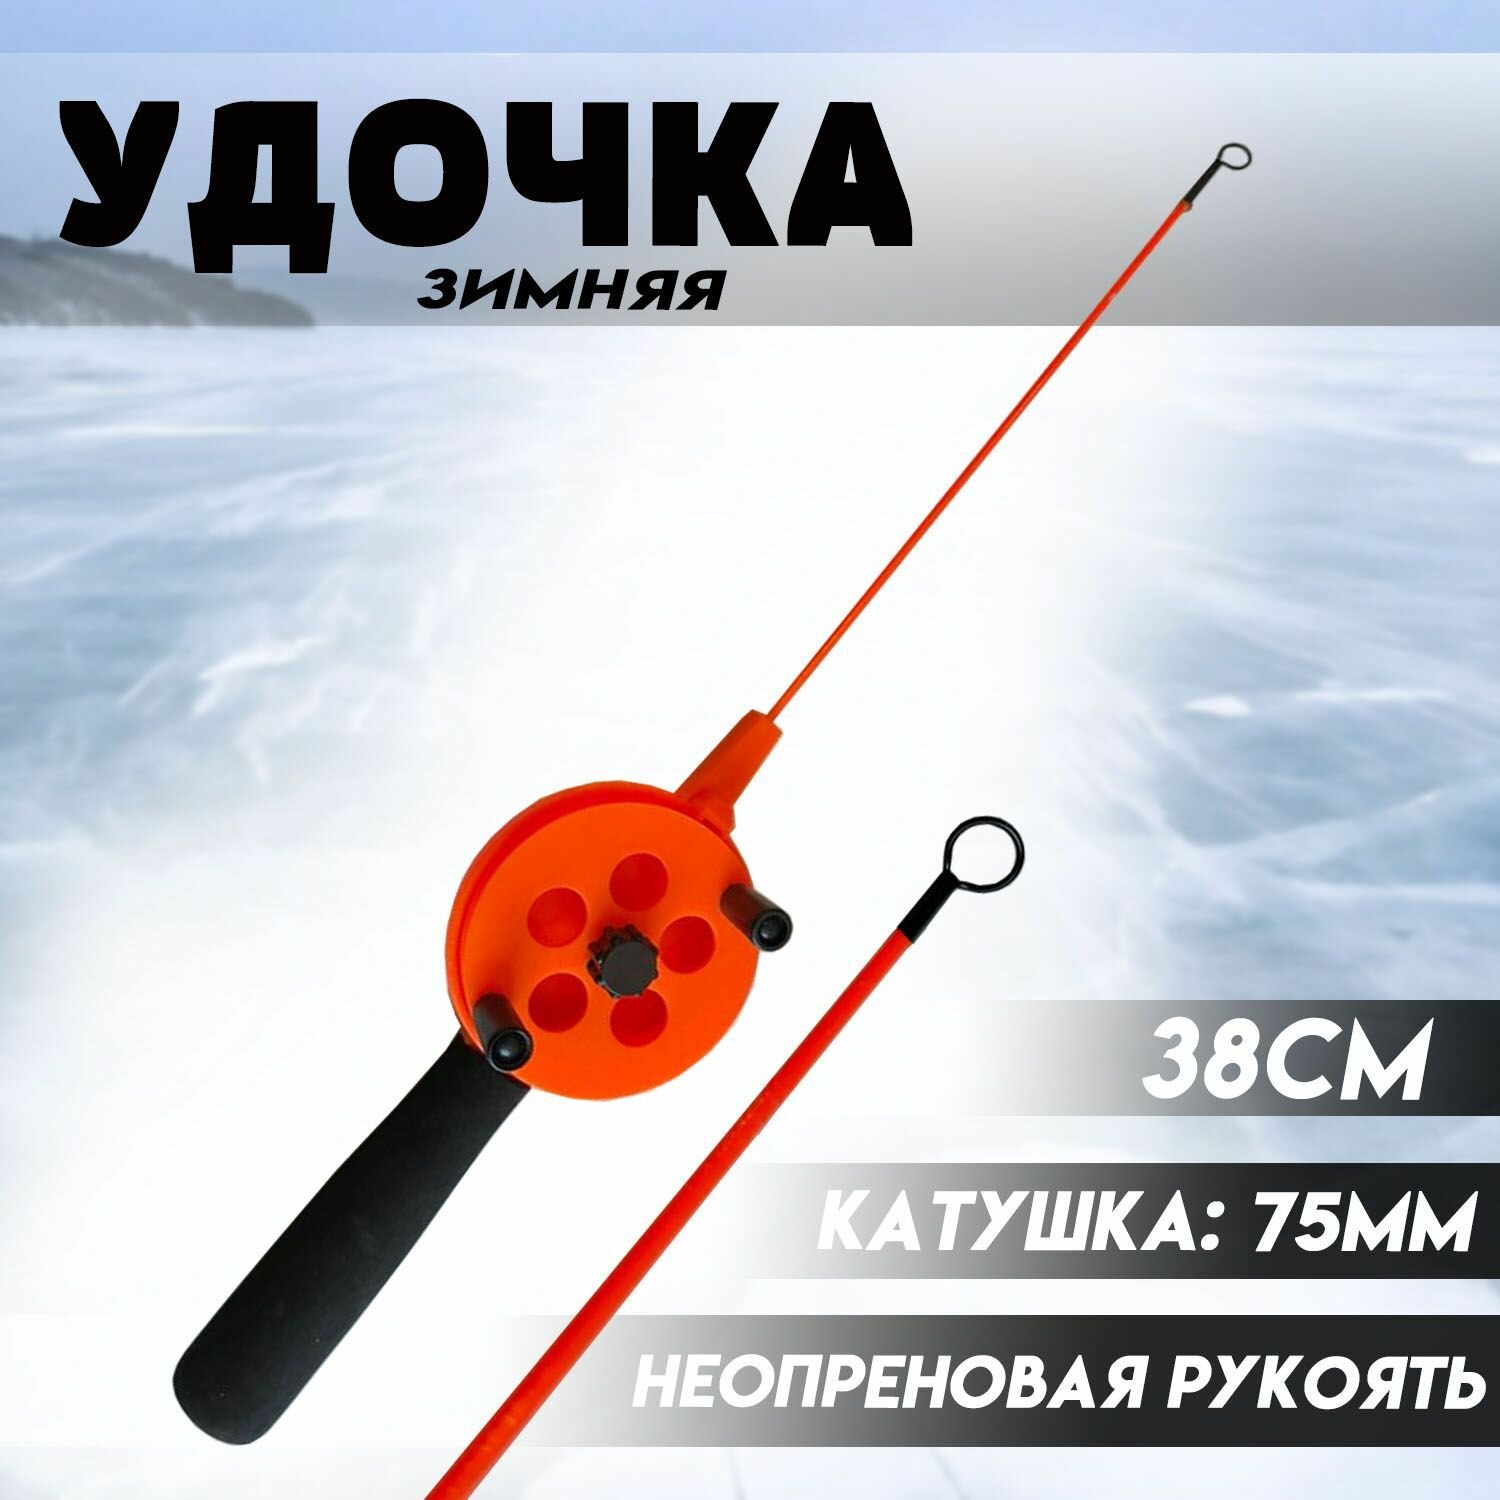 Удочка для зимней рыбалки 38см с Катушкой 75мм и Неопреновой рукоятью